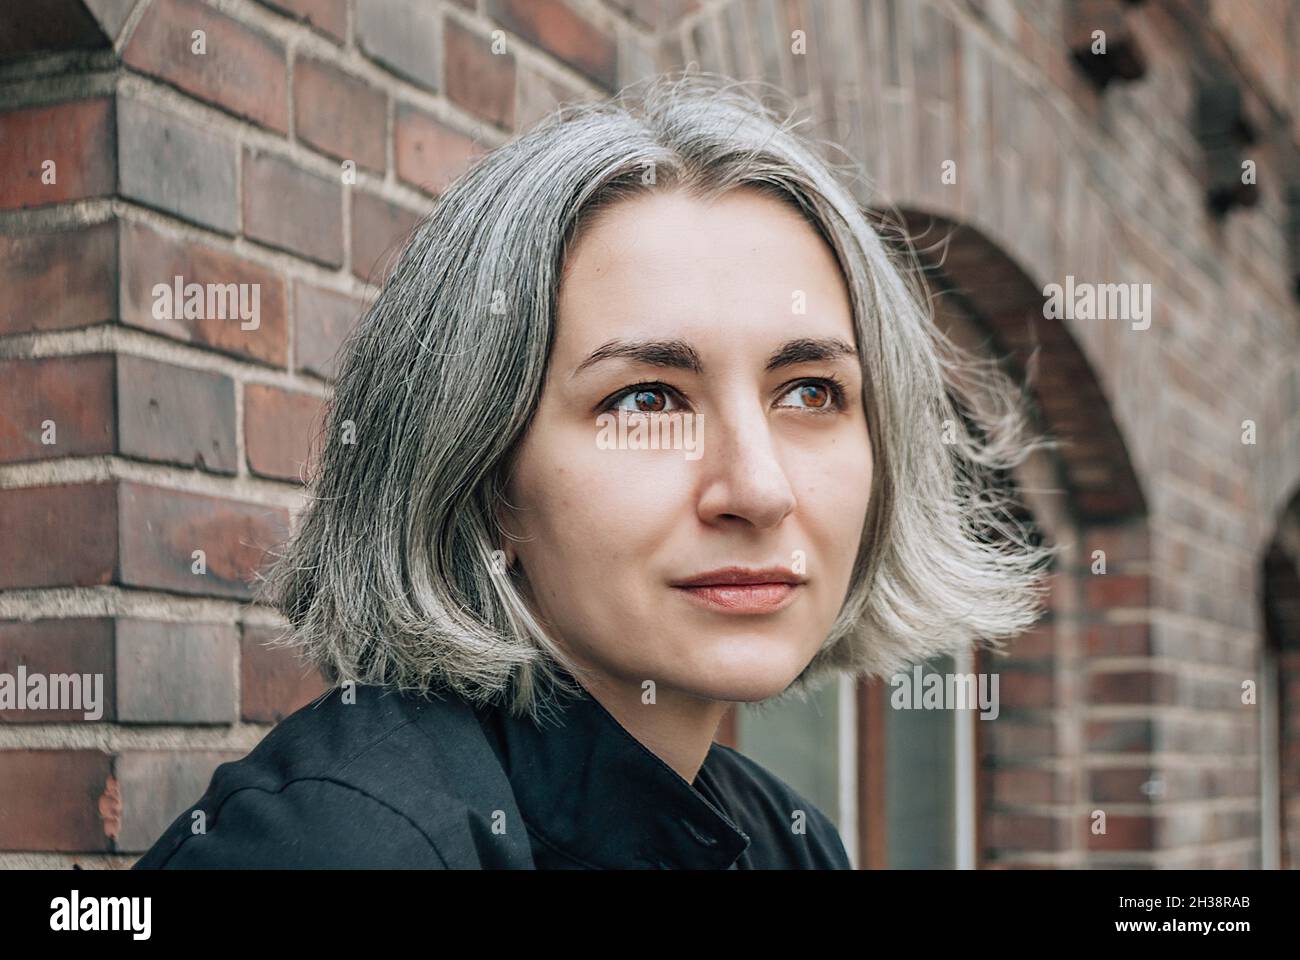 La donna dai capelli grigi guarda via sul retro dell'edificio in mattoni Foto Stock